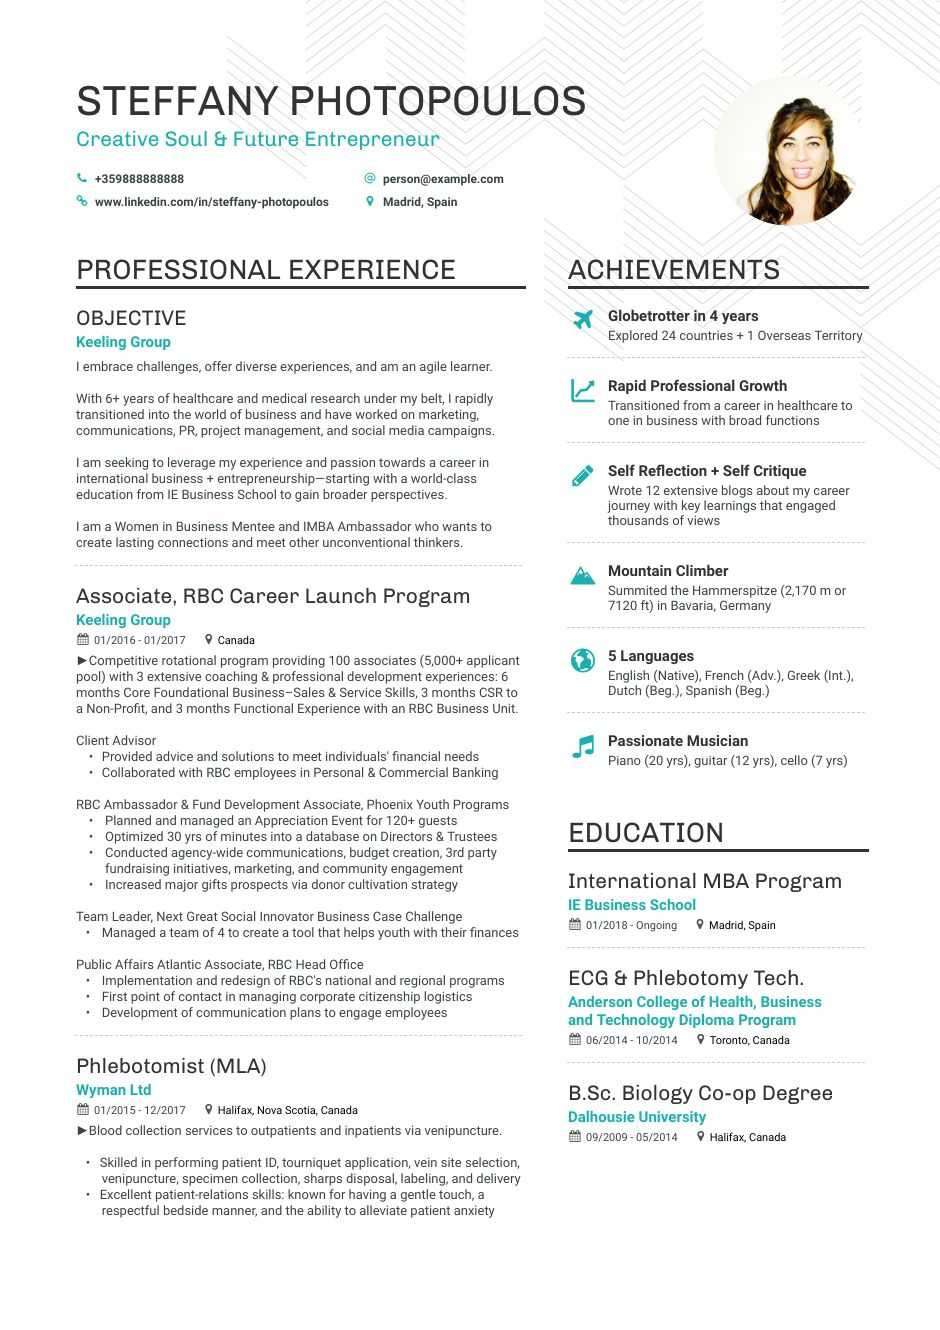 Sample Resume for Career Change to Teaching Career Change Resume Examples, Skills, Templates & More for 2021